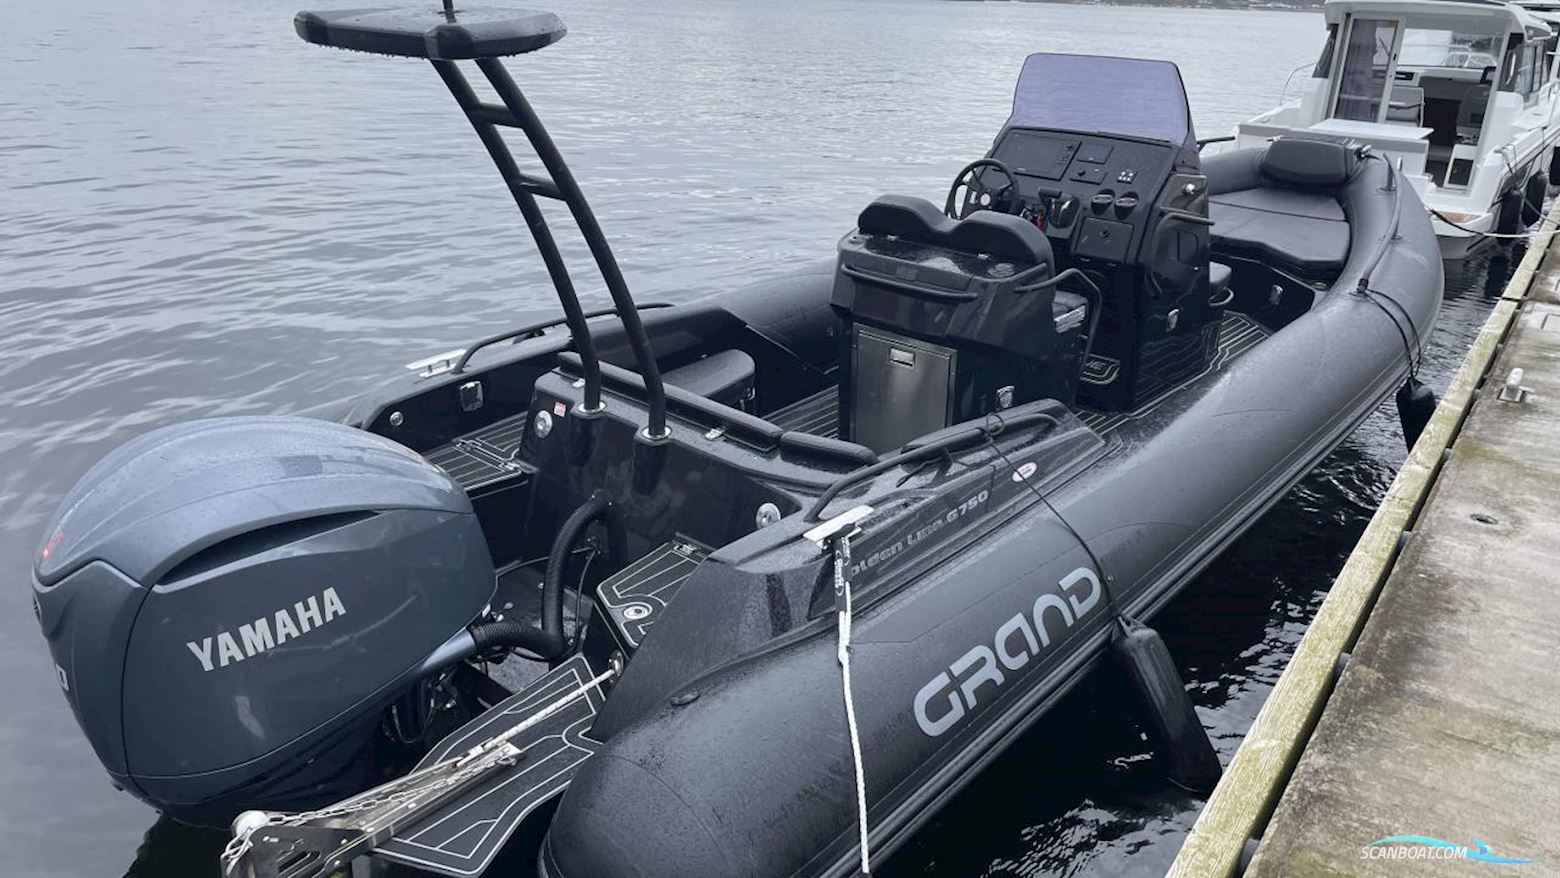 GRAND GOLDEN LINE G750L Motor boat 2022, with Yamaha engine, Sweden